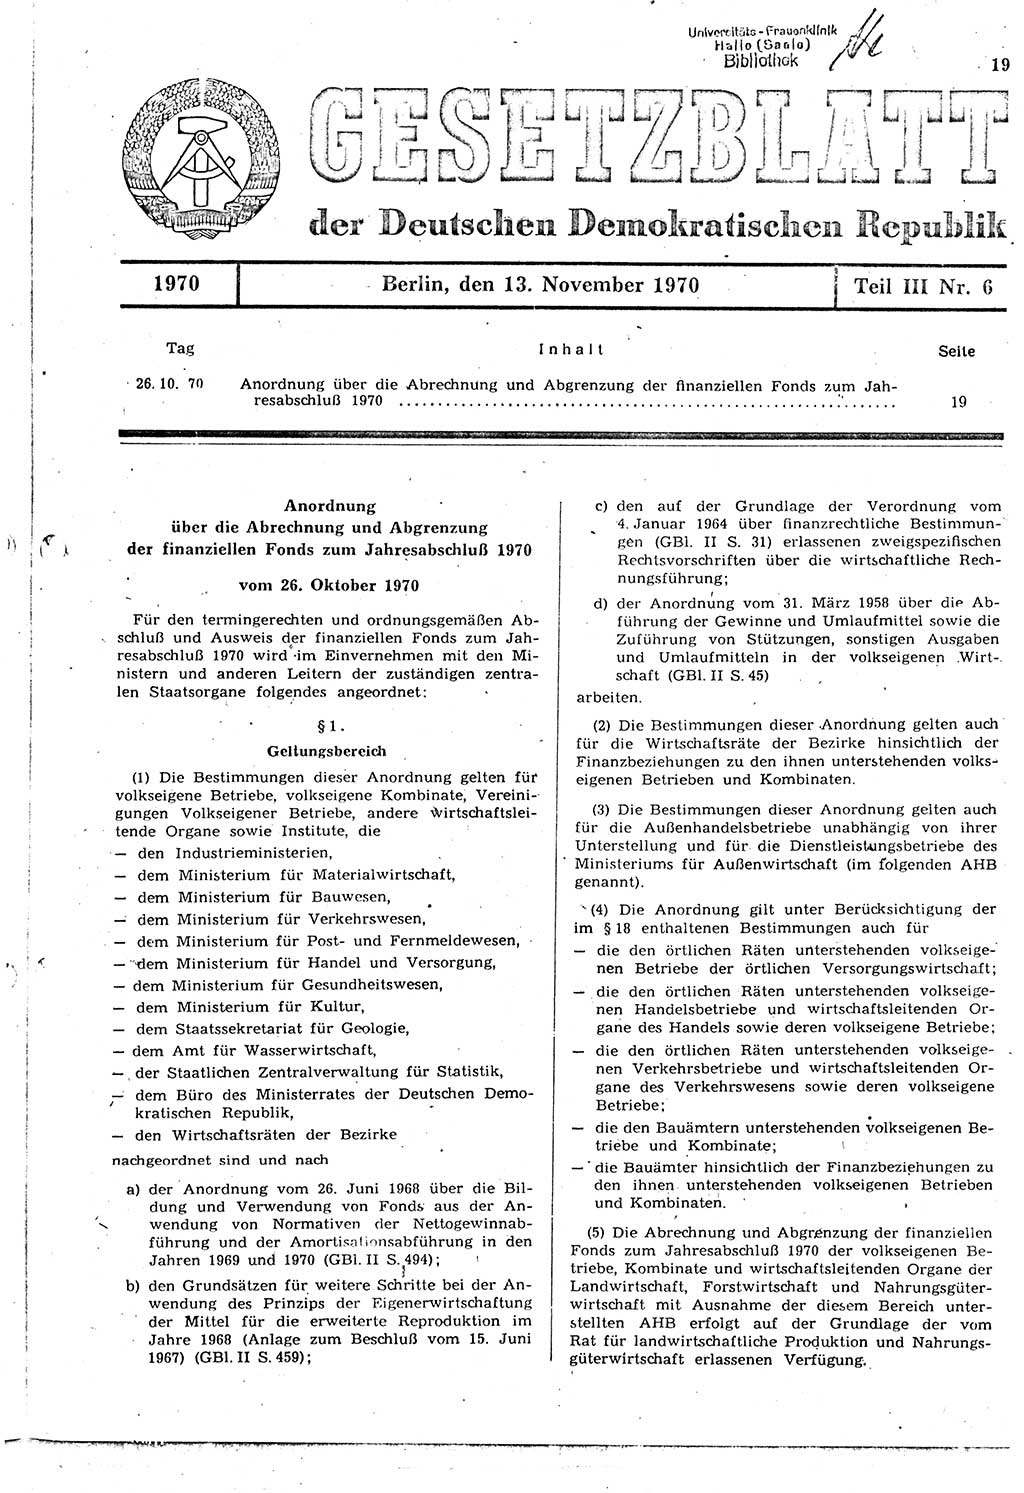 Gesetzblatt (GBl.) der Deutschen Demokratischen Republik (DDR) Teil ⅠⅠⅠ 1970, Seite 19 (GBl. DDR ⅠⅠⅠ 1970, S. 19)